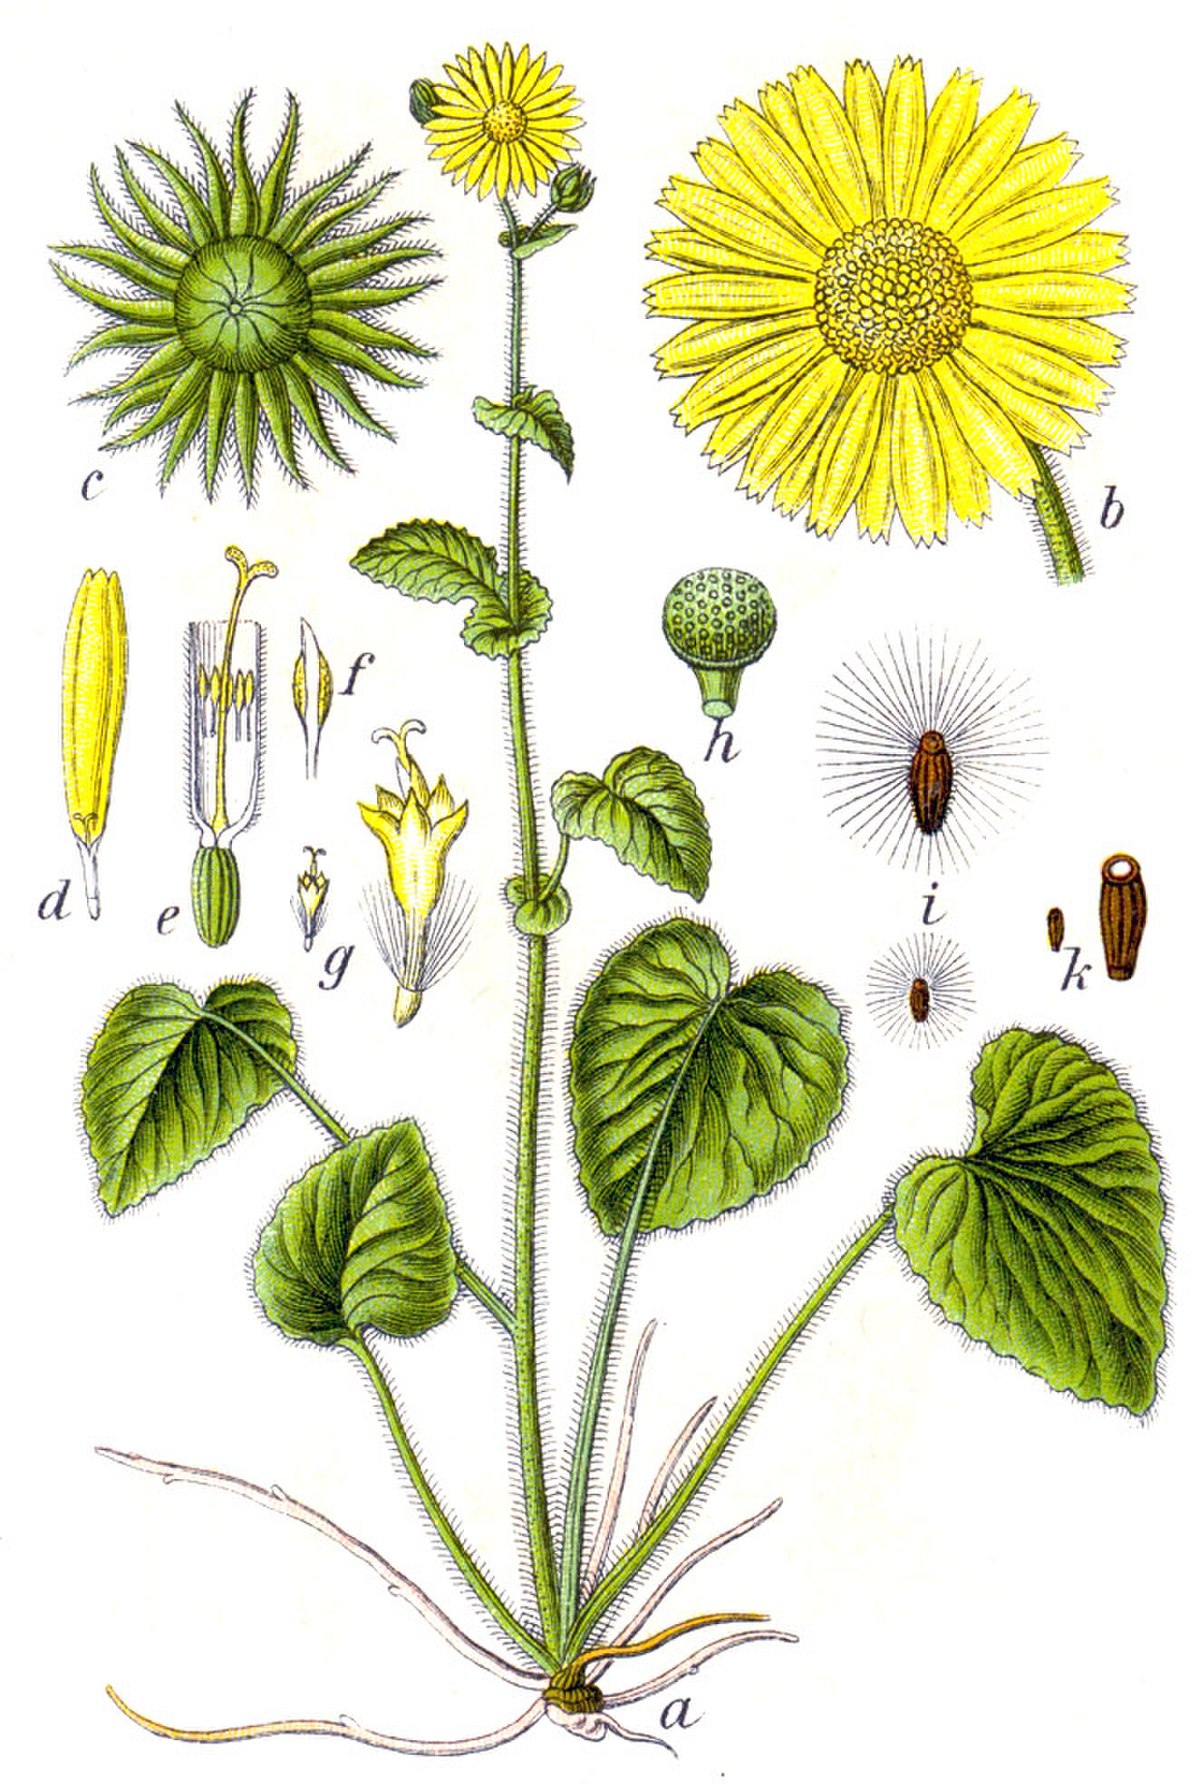  Doronicum pardalianches